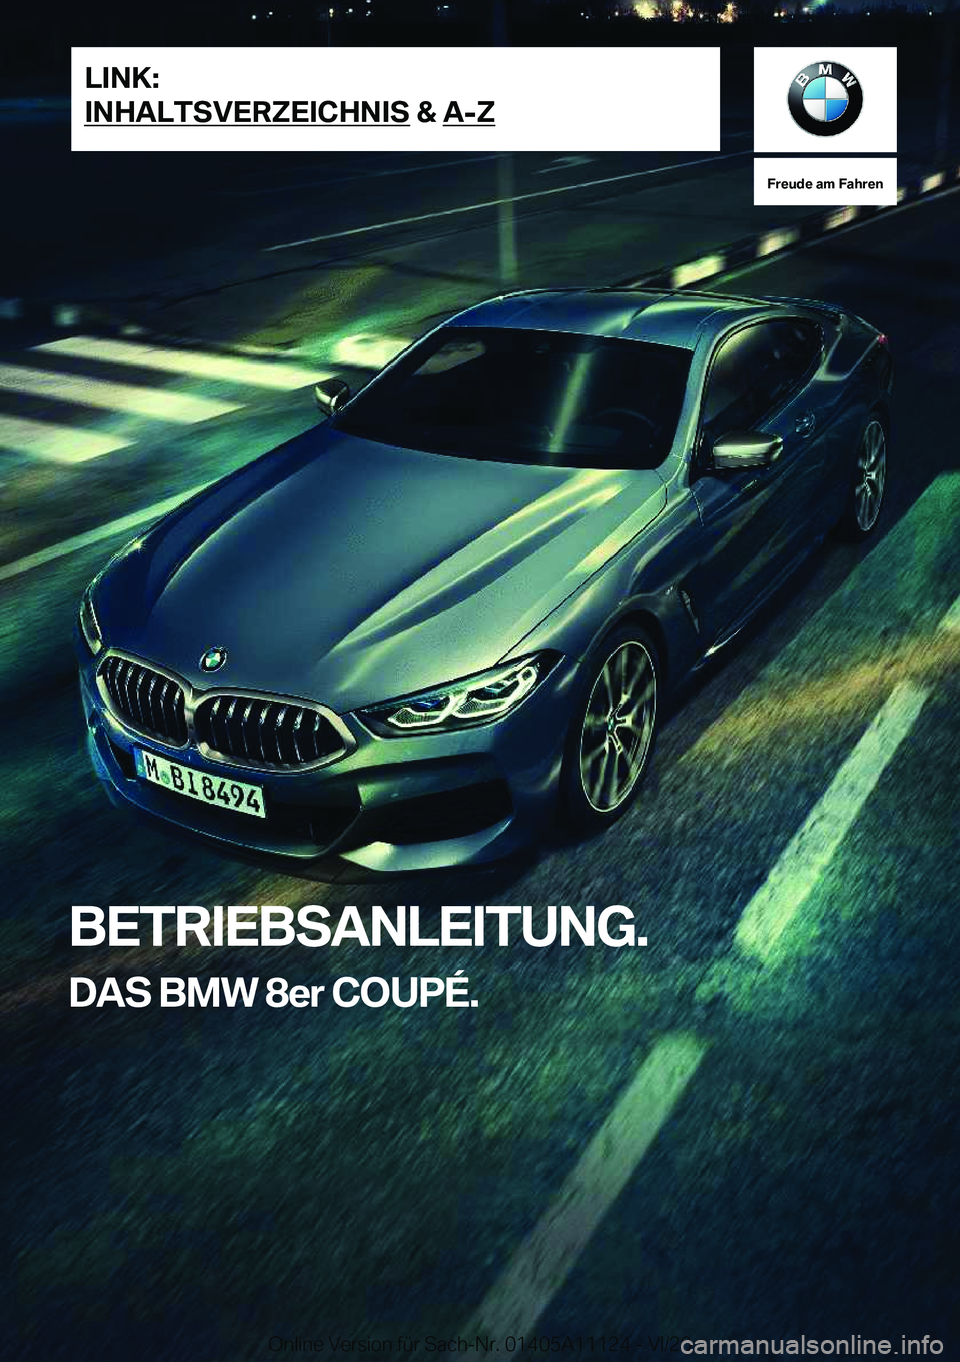 BMW 8 SERIES COUPE 2021  Betriebsanleitungen (in German) �F�r�e�u�d�e��a�m��F�a�h�r�e�n
�B�E�T�R�I�E�B�S�A�N�L�E�I�T�U�N�G�.�D�A�S��B�M�W��8�e�r��C�O�U�P�